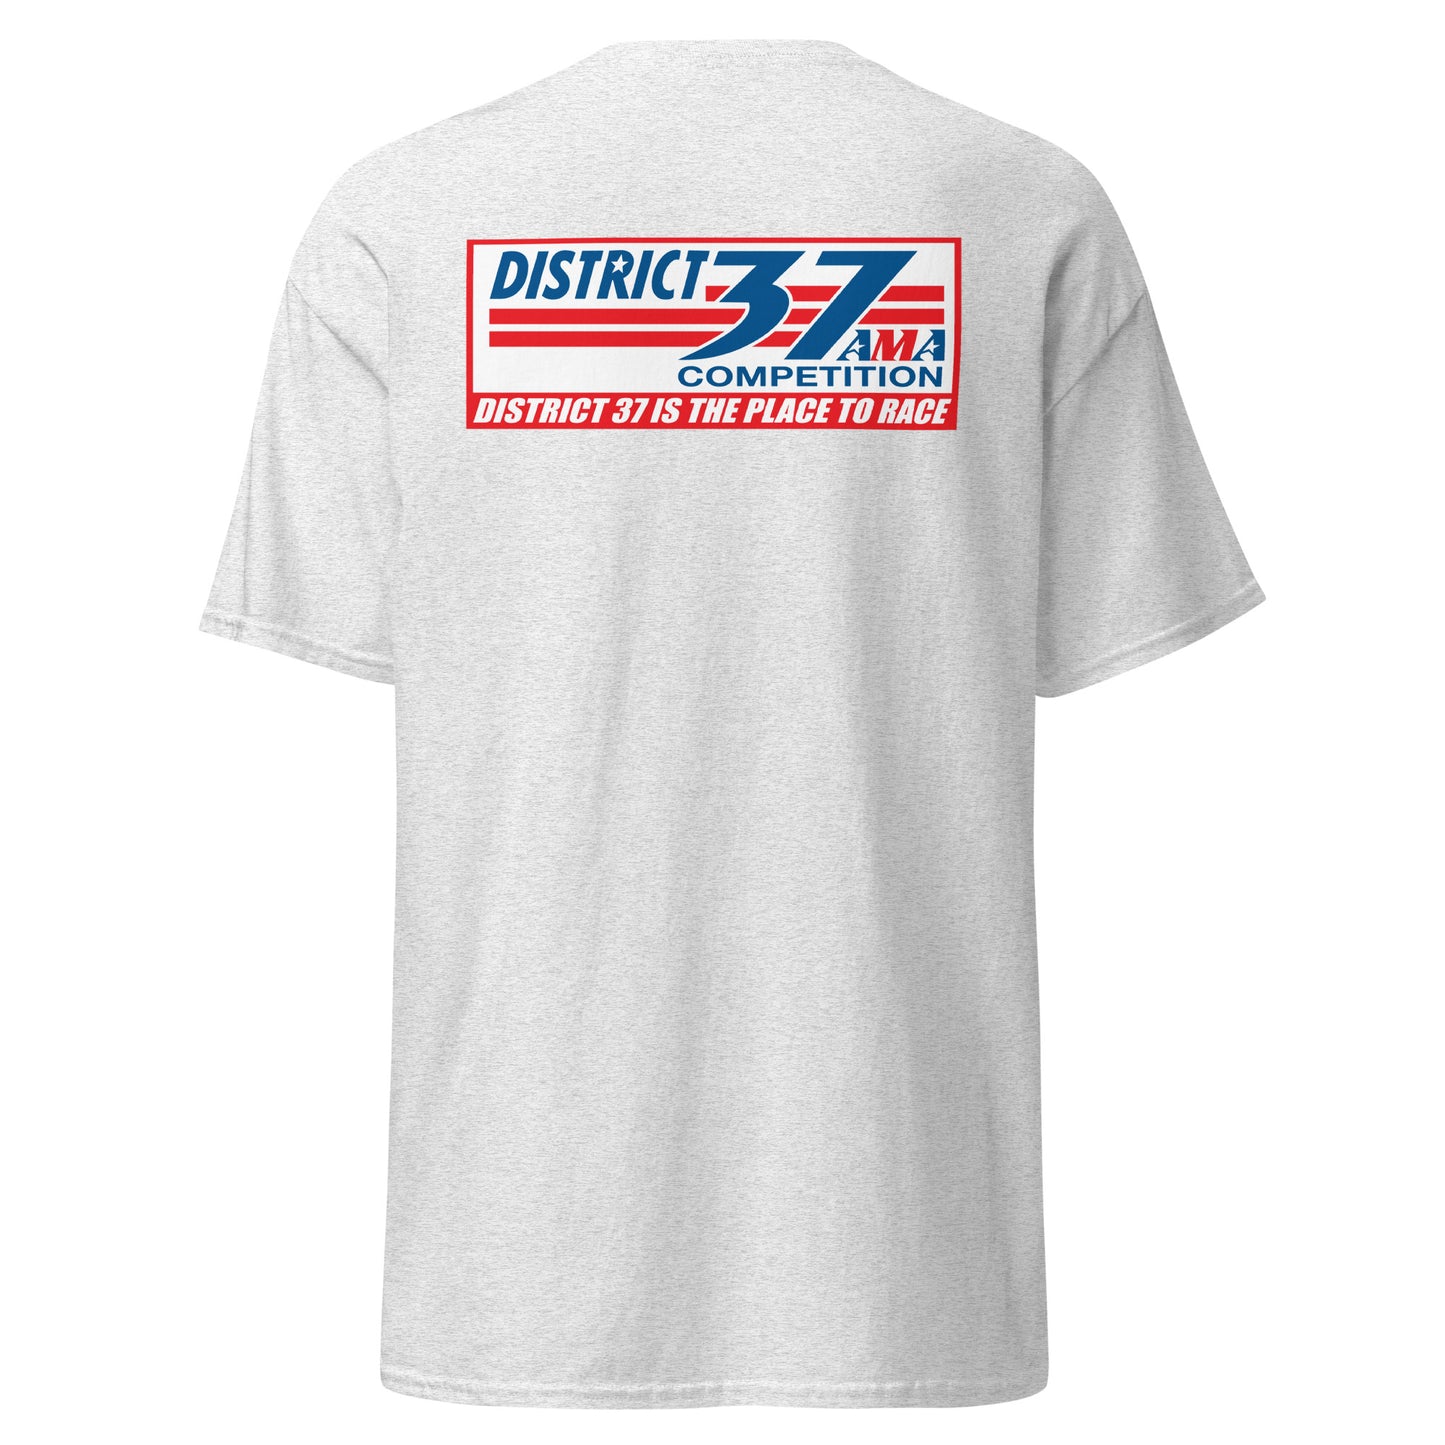 District 37 Series Shirt - Adult D37 Shirt